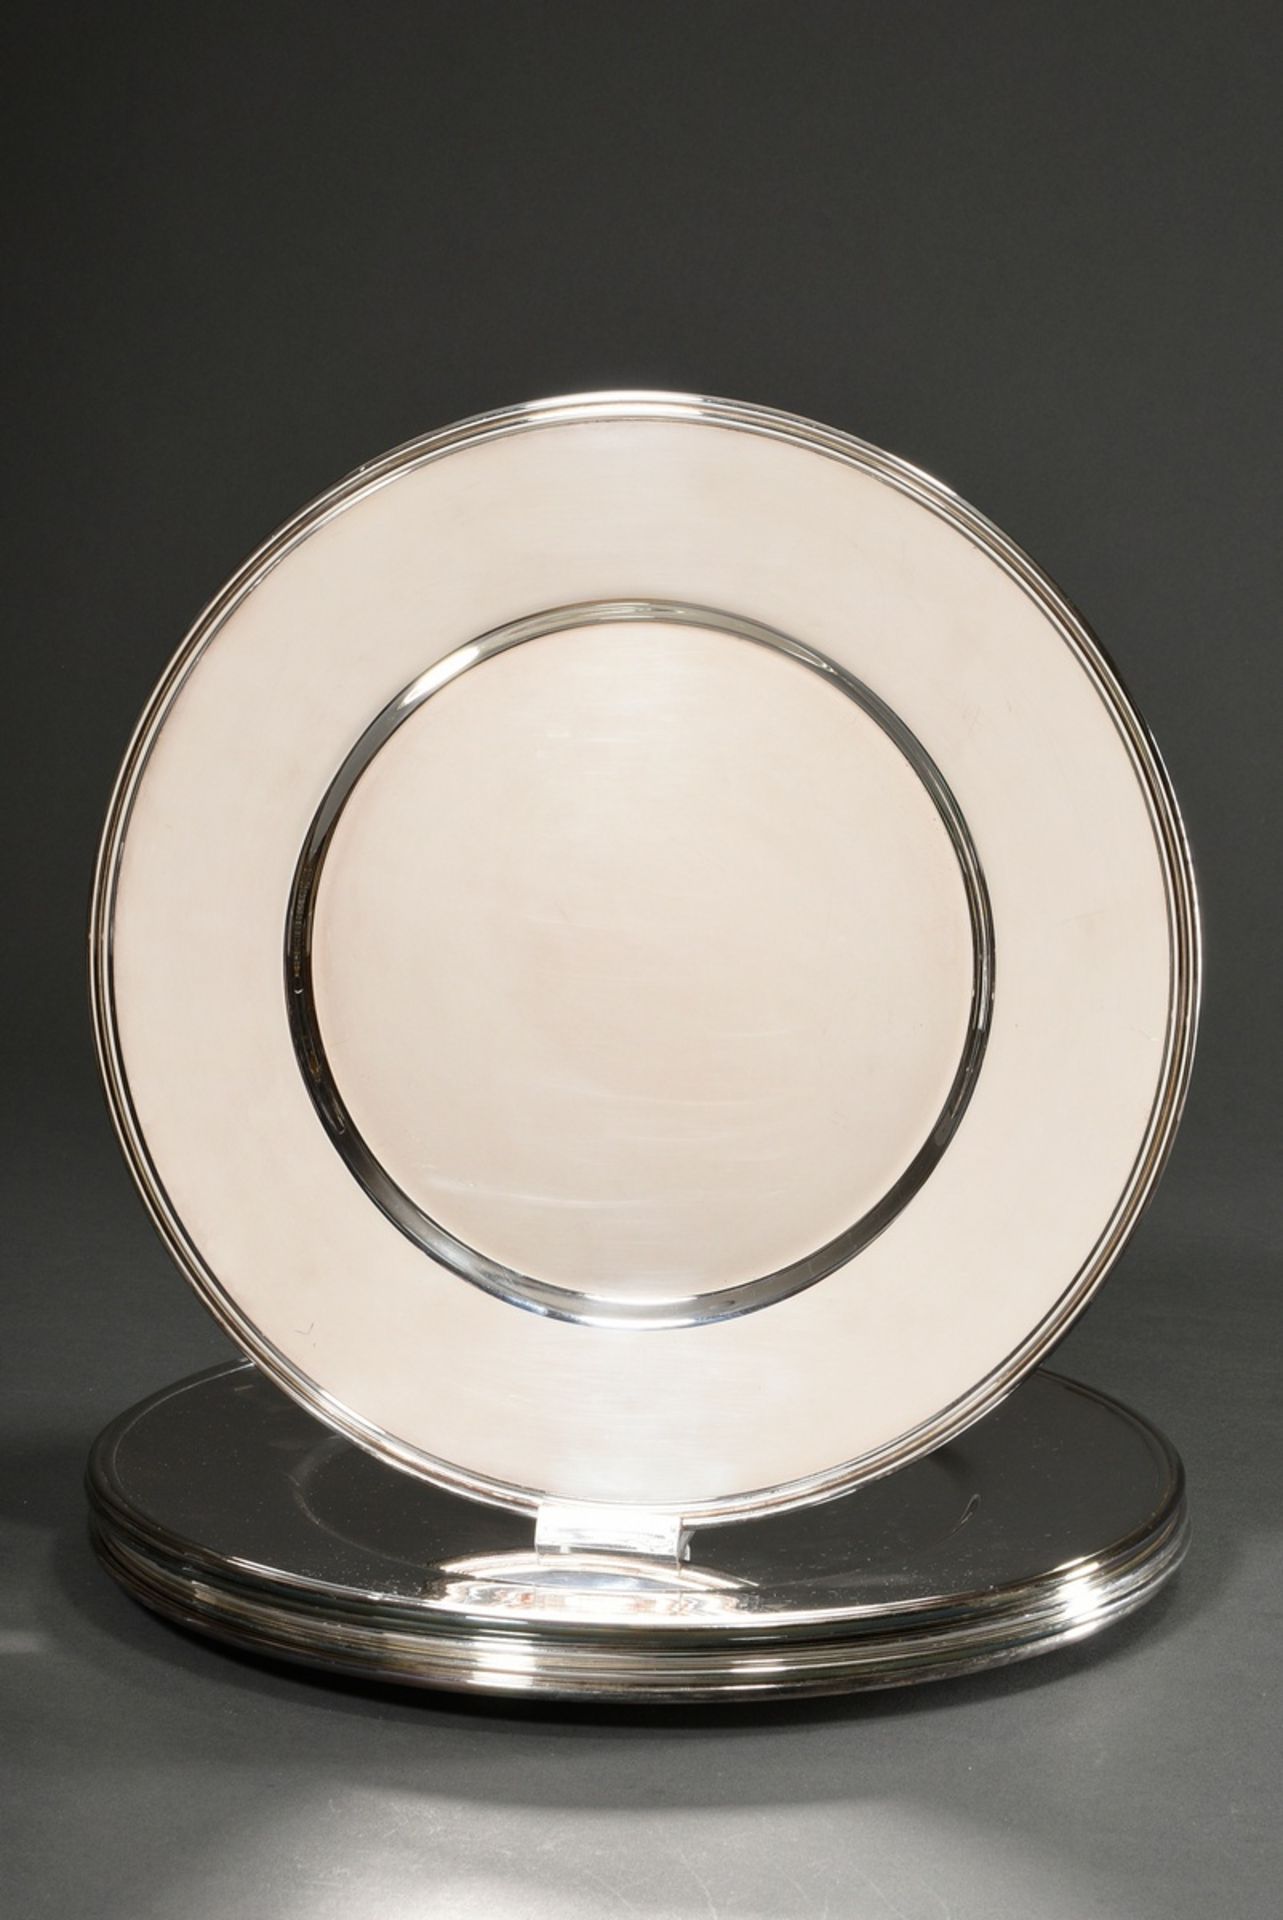 6 Moderne Platzteller in schlichter Façon, Wilkens, Silber 925, 6240g, Ø 32cm, in Original Hüllen - Bild 7 aus 7